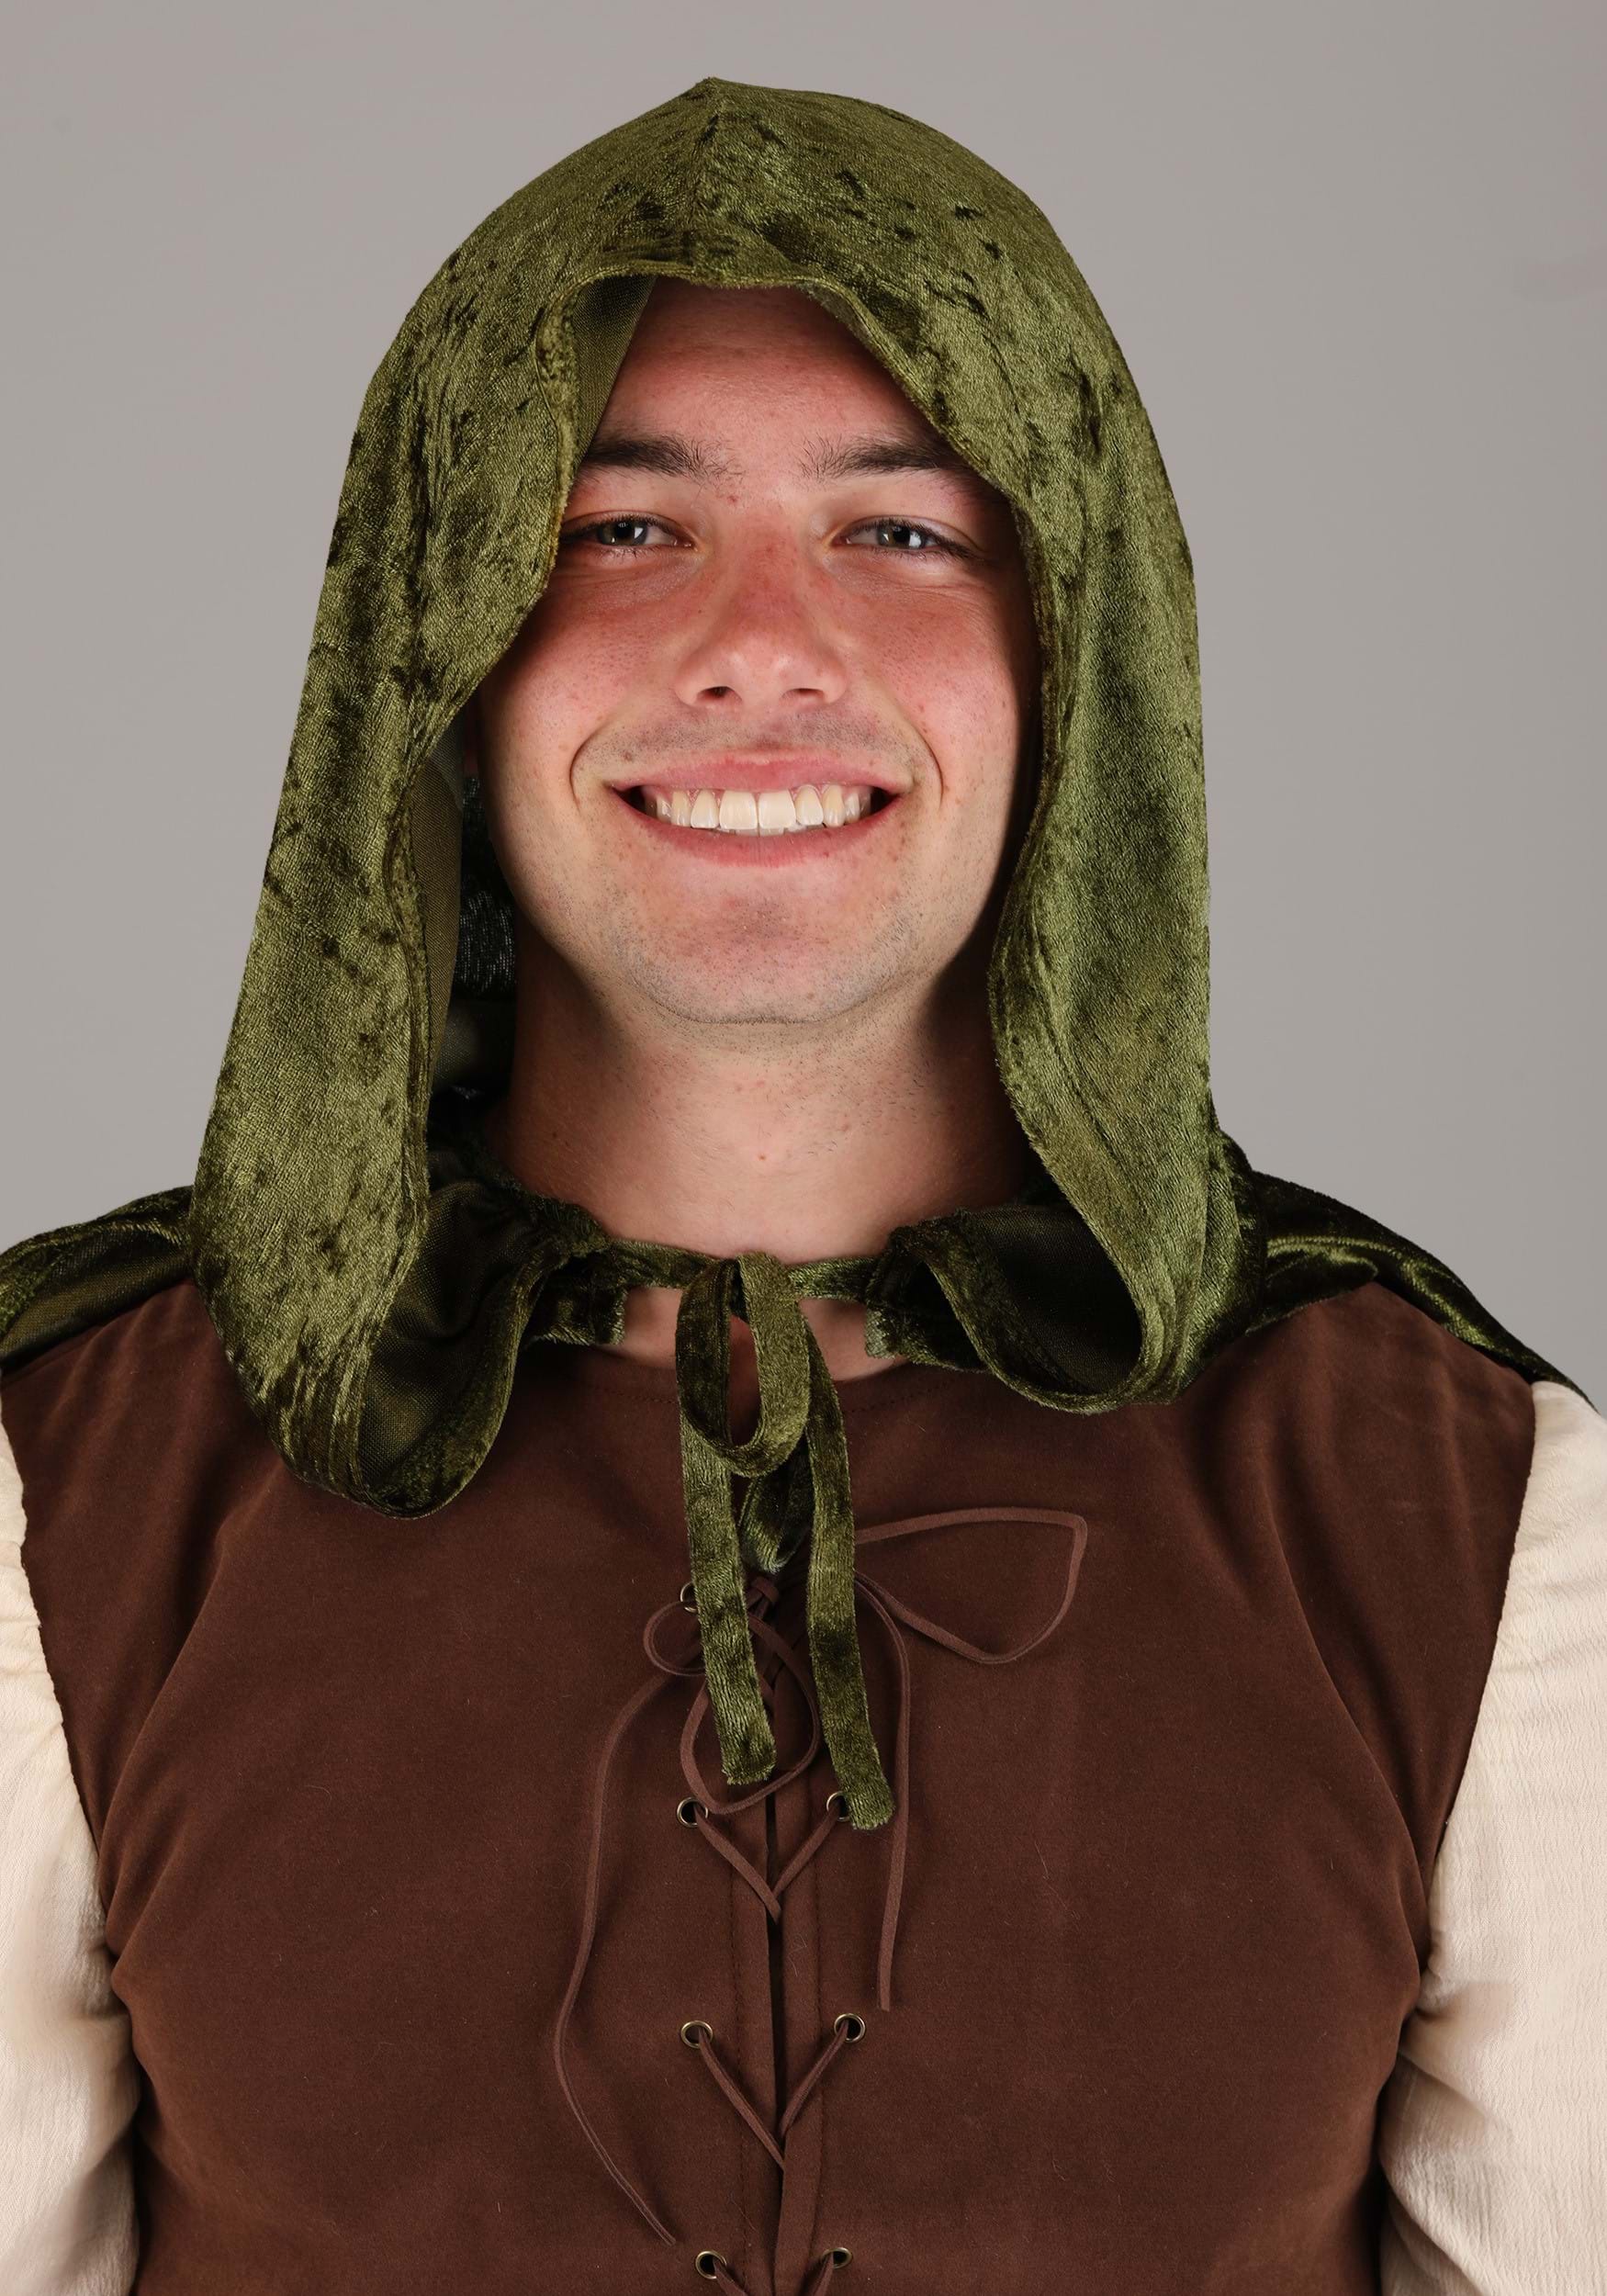 Adult Deluxe Robin Hood Fancy Dress Costume